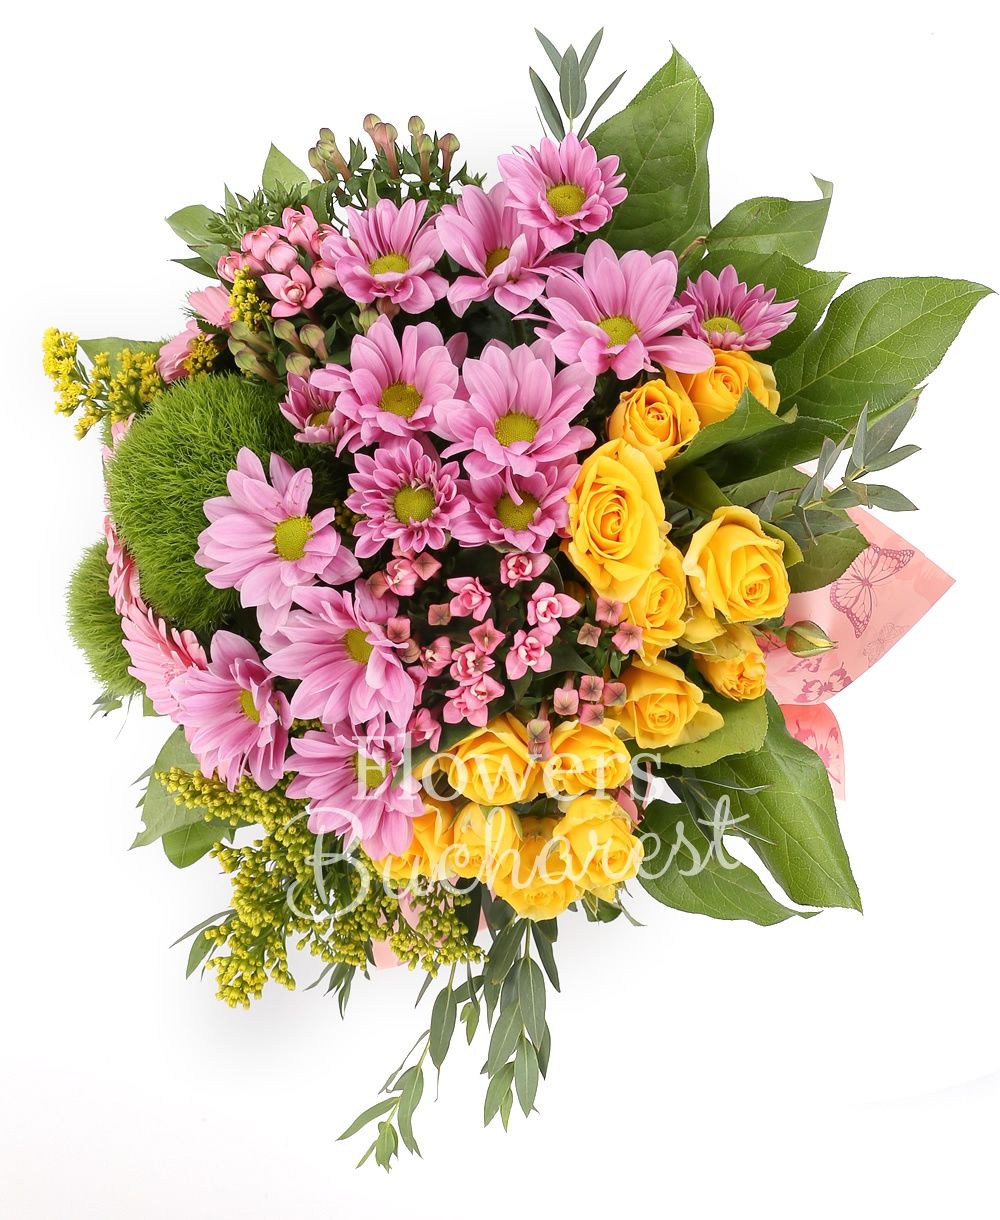 3 green carnations, 3 yellow miniroses, 2 pink chrysanthemums, 2 pink bouvardia, 3 pink gerberas, 3 solidago, greenery